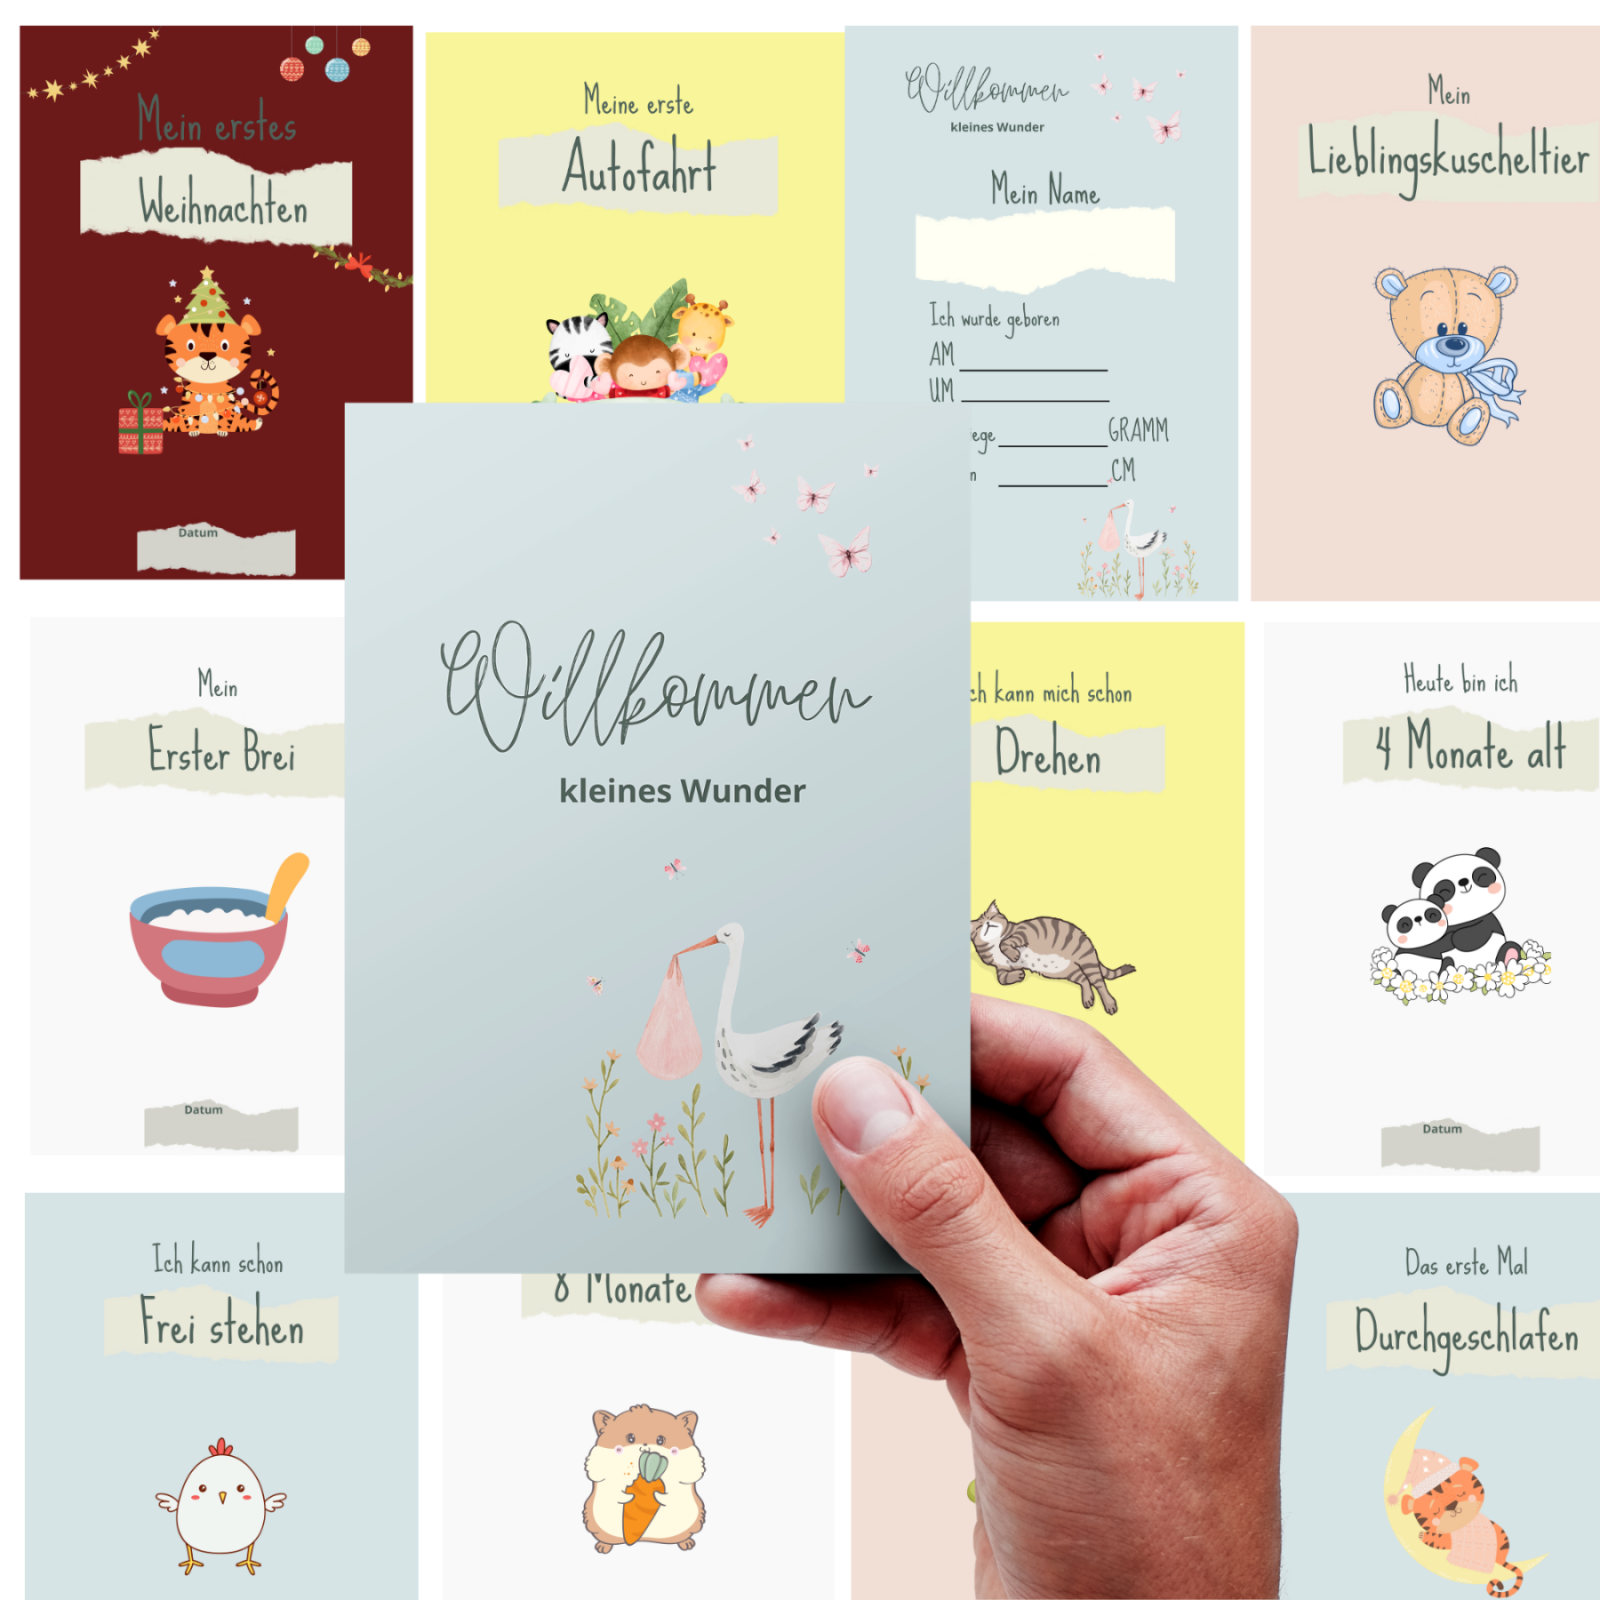 Meilensteinkarten für das erste Babyjahr - Digitale Datei zum Download, 36 Karten 7 blanko Karten